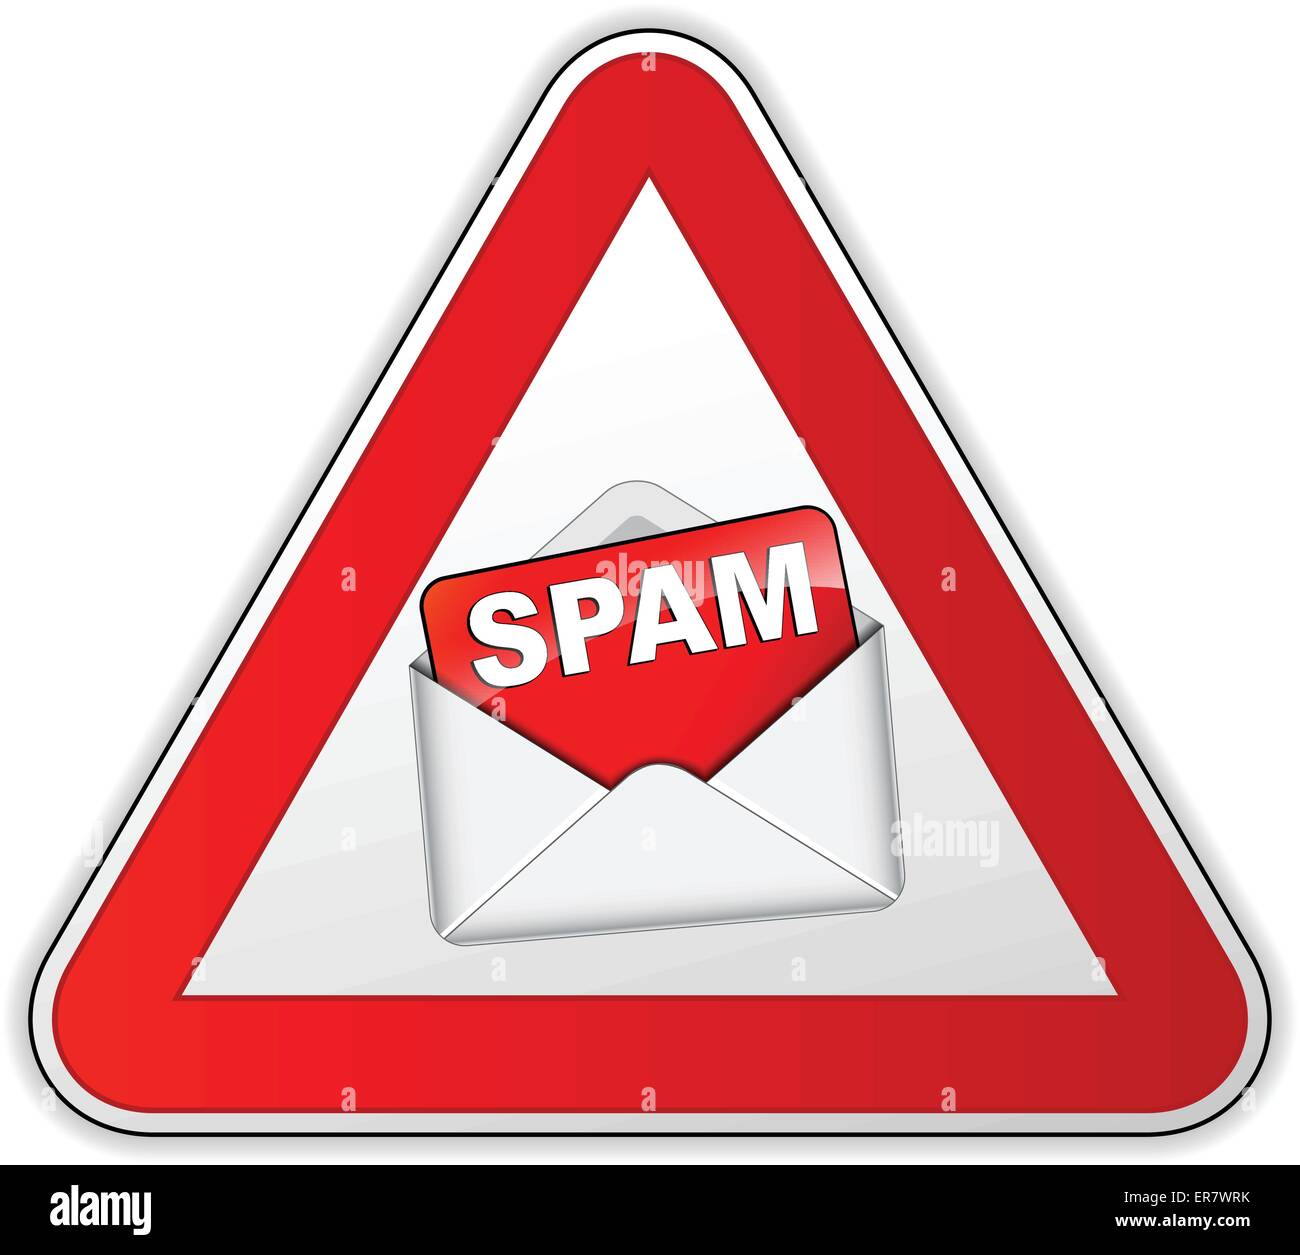 Illustrazione Vettoriale di segno di spam su sfondo bianco Illustrazione Vettoriale